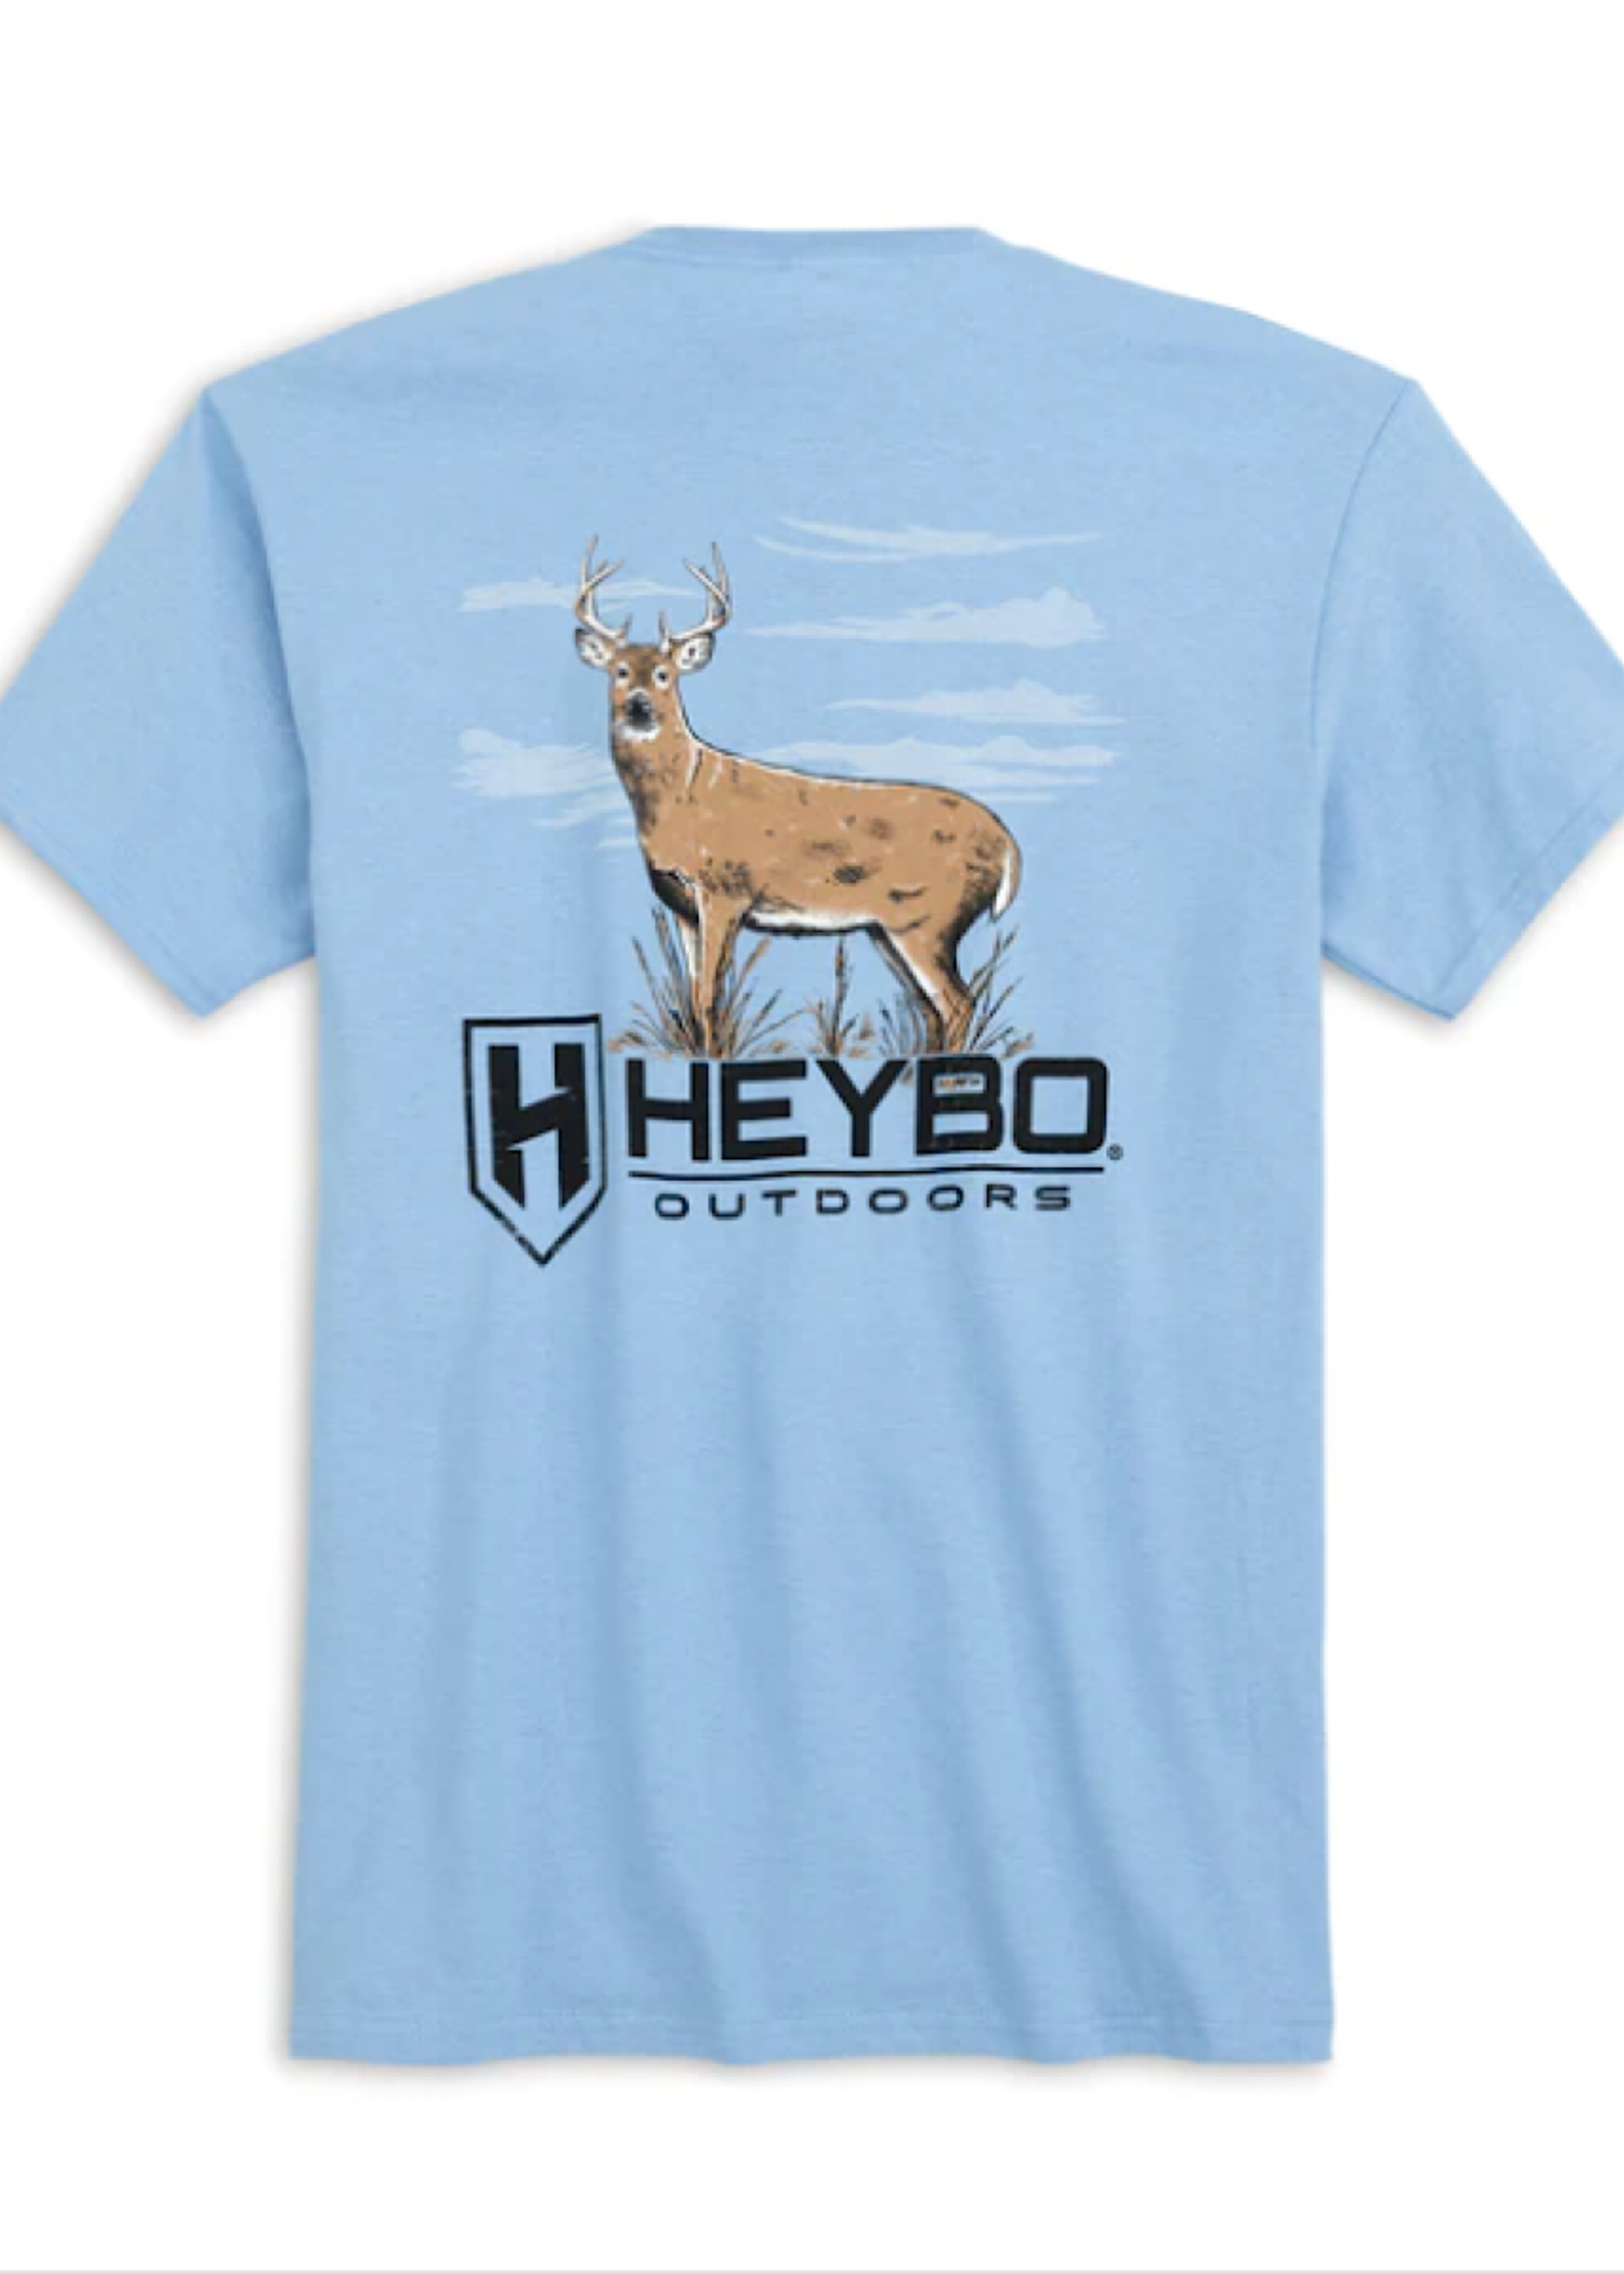 HEYBO Outdoors Heybo Big Boy Graphic Tee